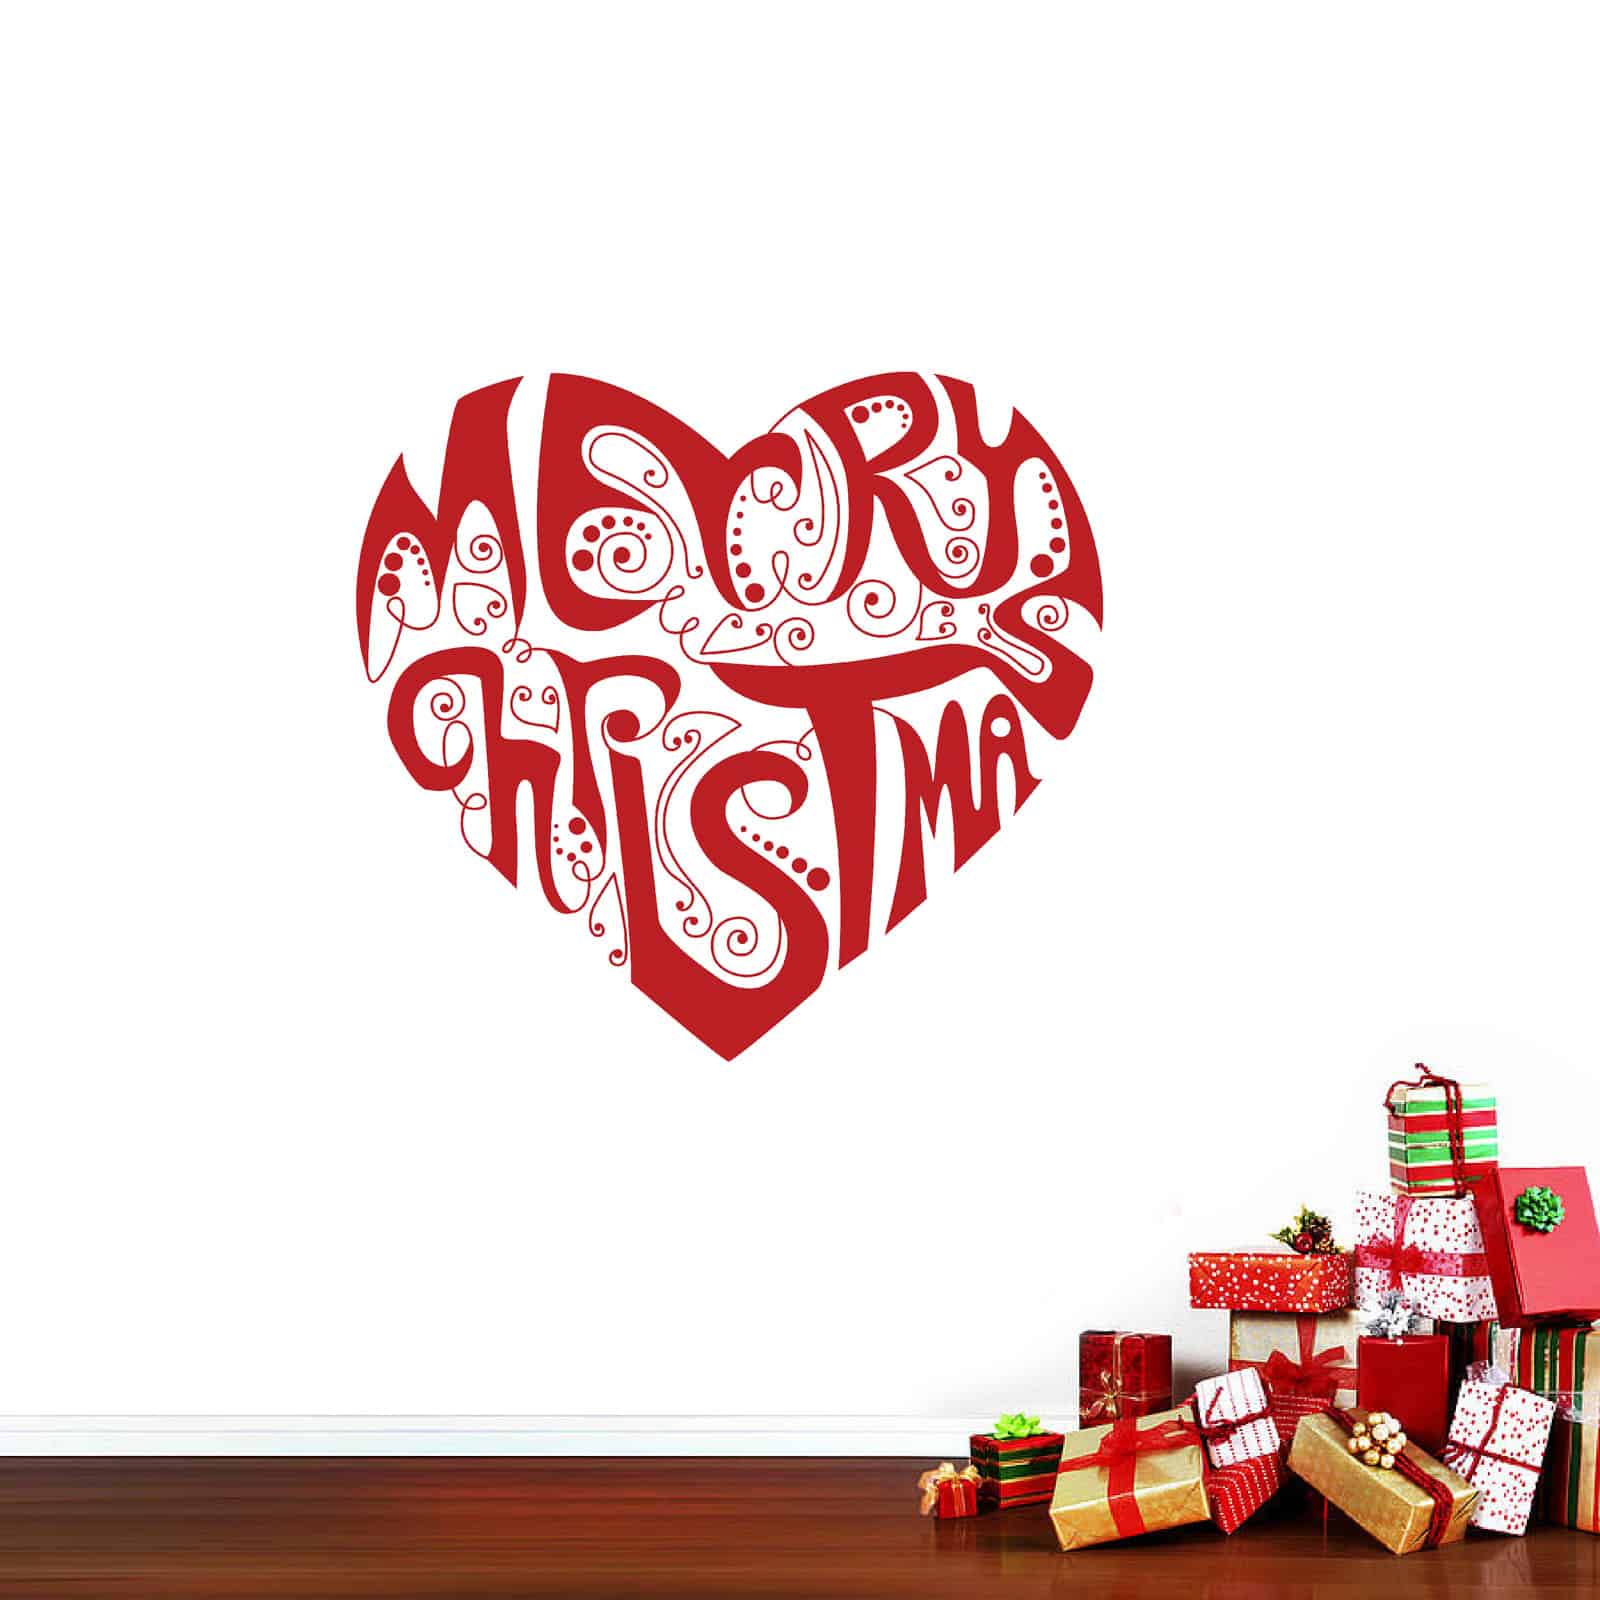 Merry Christmas Heart Wall Sticker